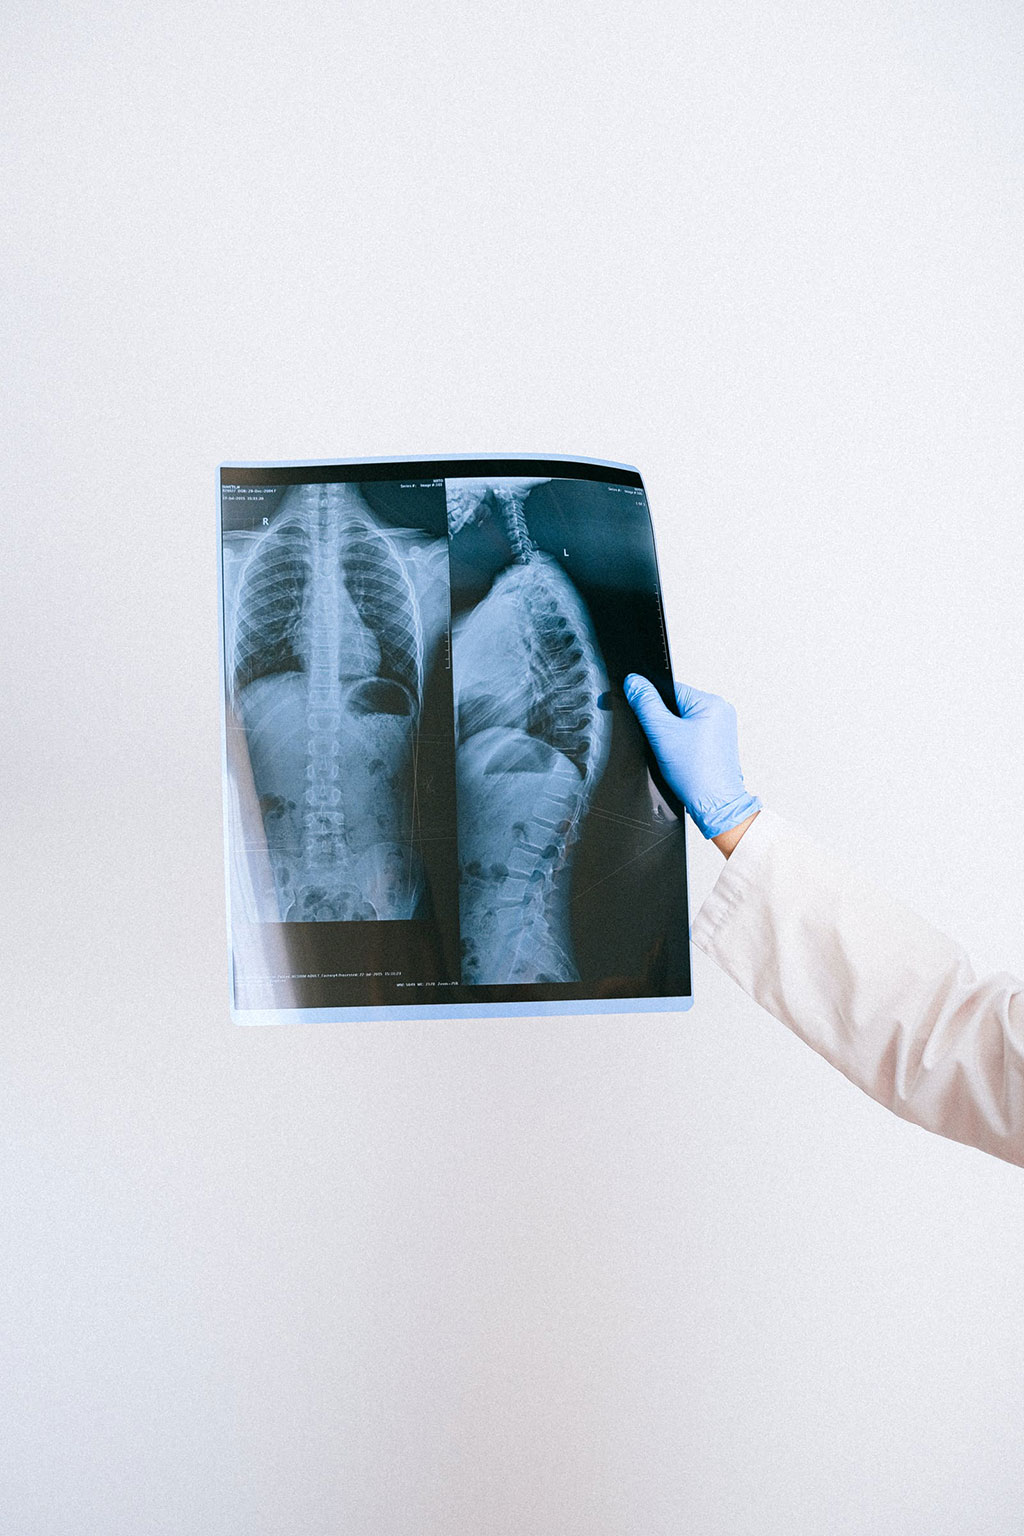 Imagen: Las fracturas de la columna en los mayores se pueden prevenir con rayos X simples (Fotografía cortesía de Pexels)